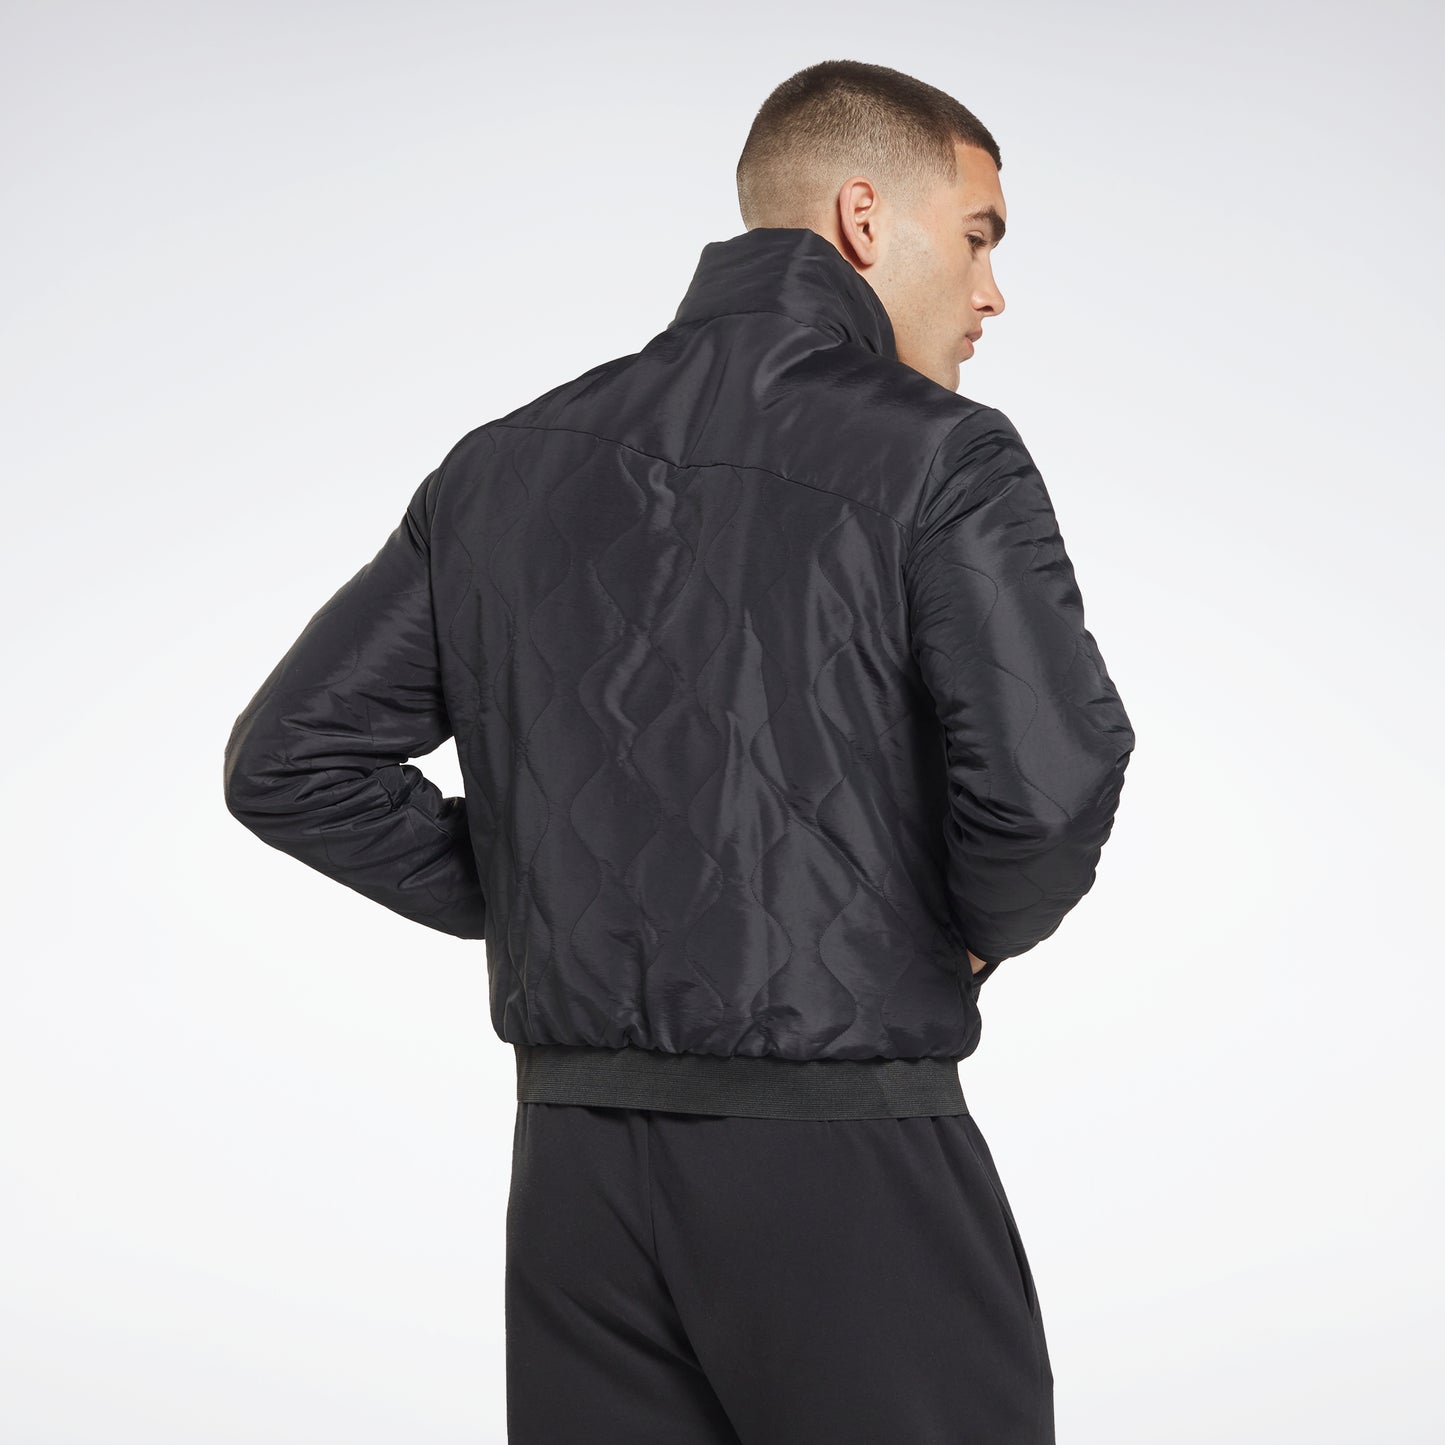 Reebok Apparel Men Outerwear Fleece-Lined Jacket Black